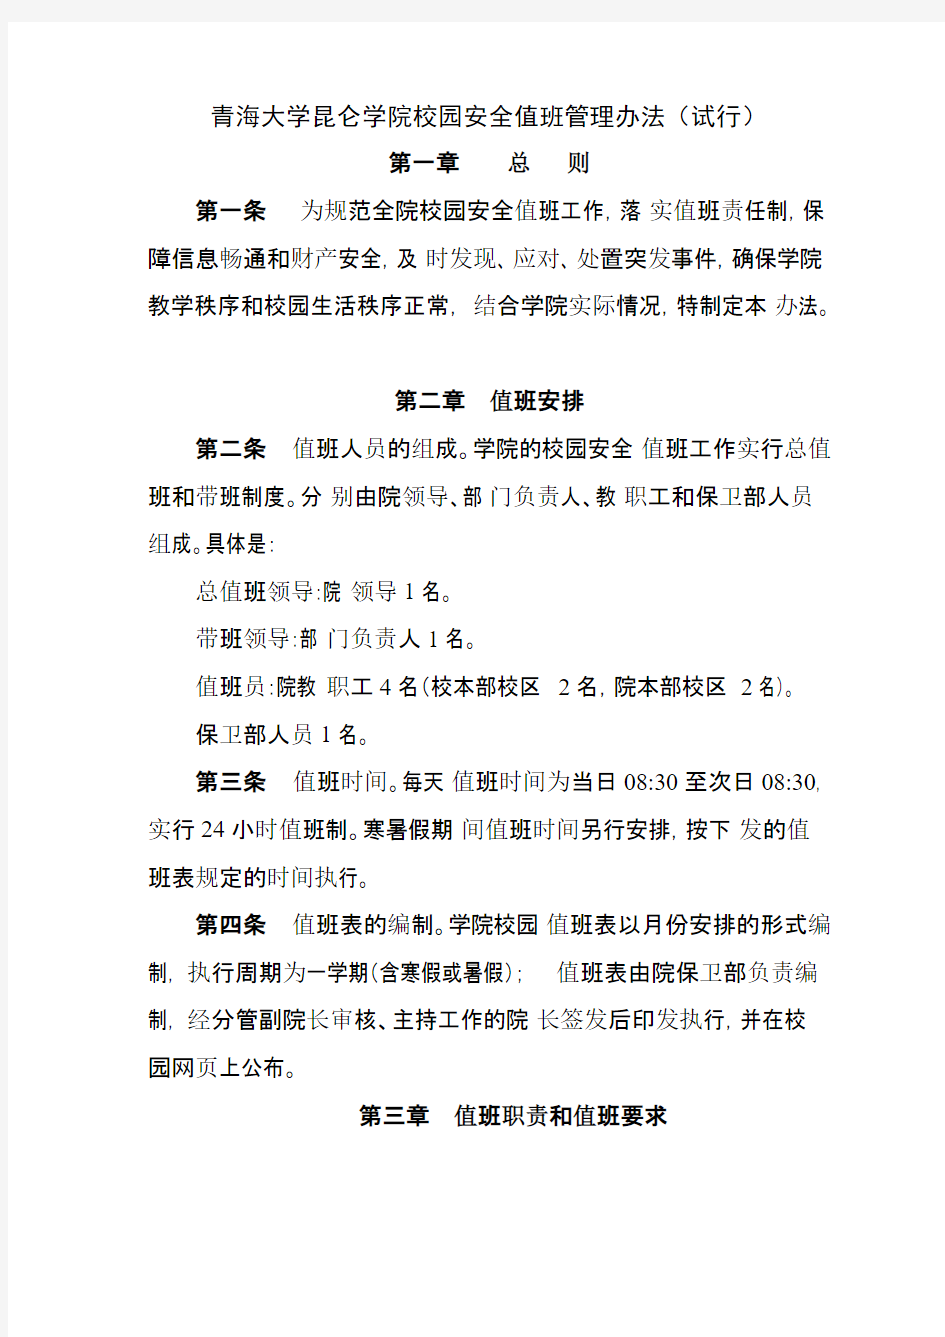 青海大学昆仑学院校园安全值班管理暂行办法-推荐下载